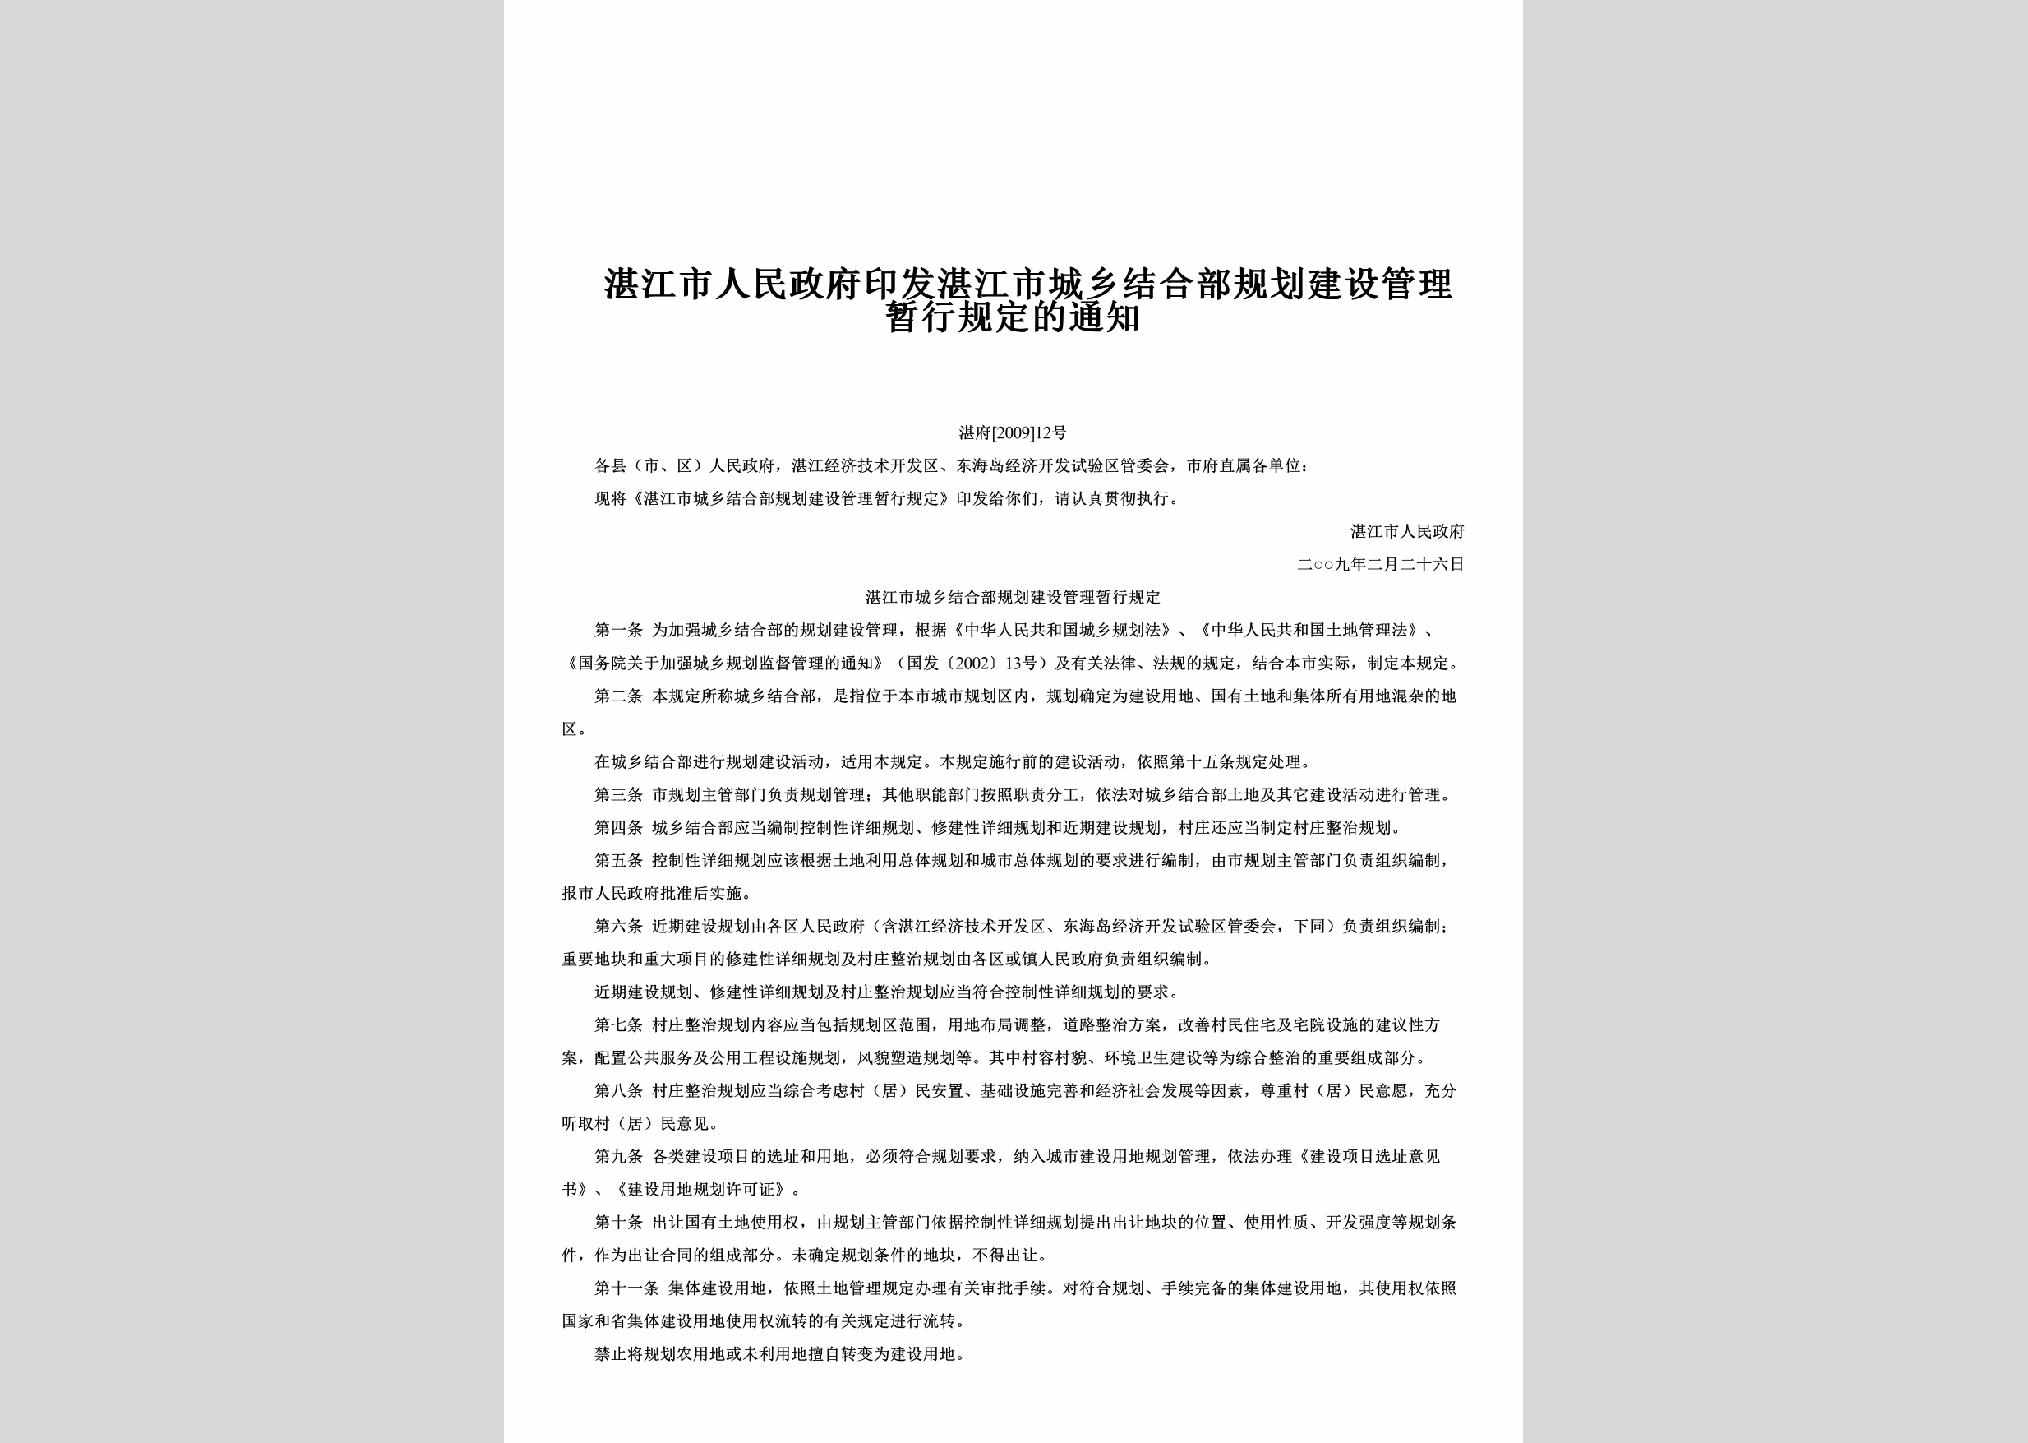 湛府[2009]12号：印发湛江市城乡结合部规划建设管理暂行规定的通知